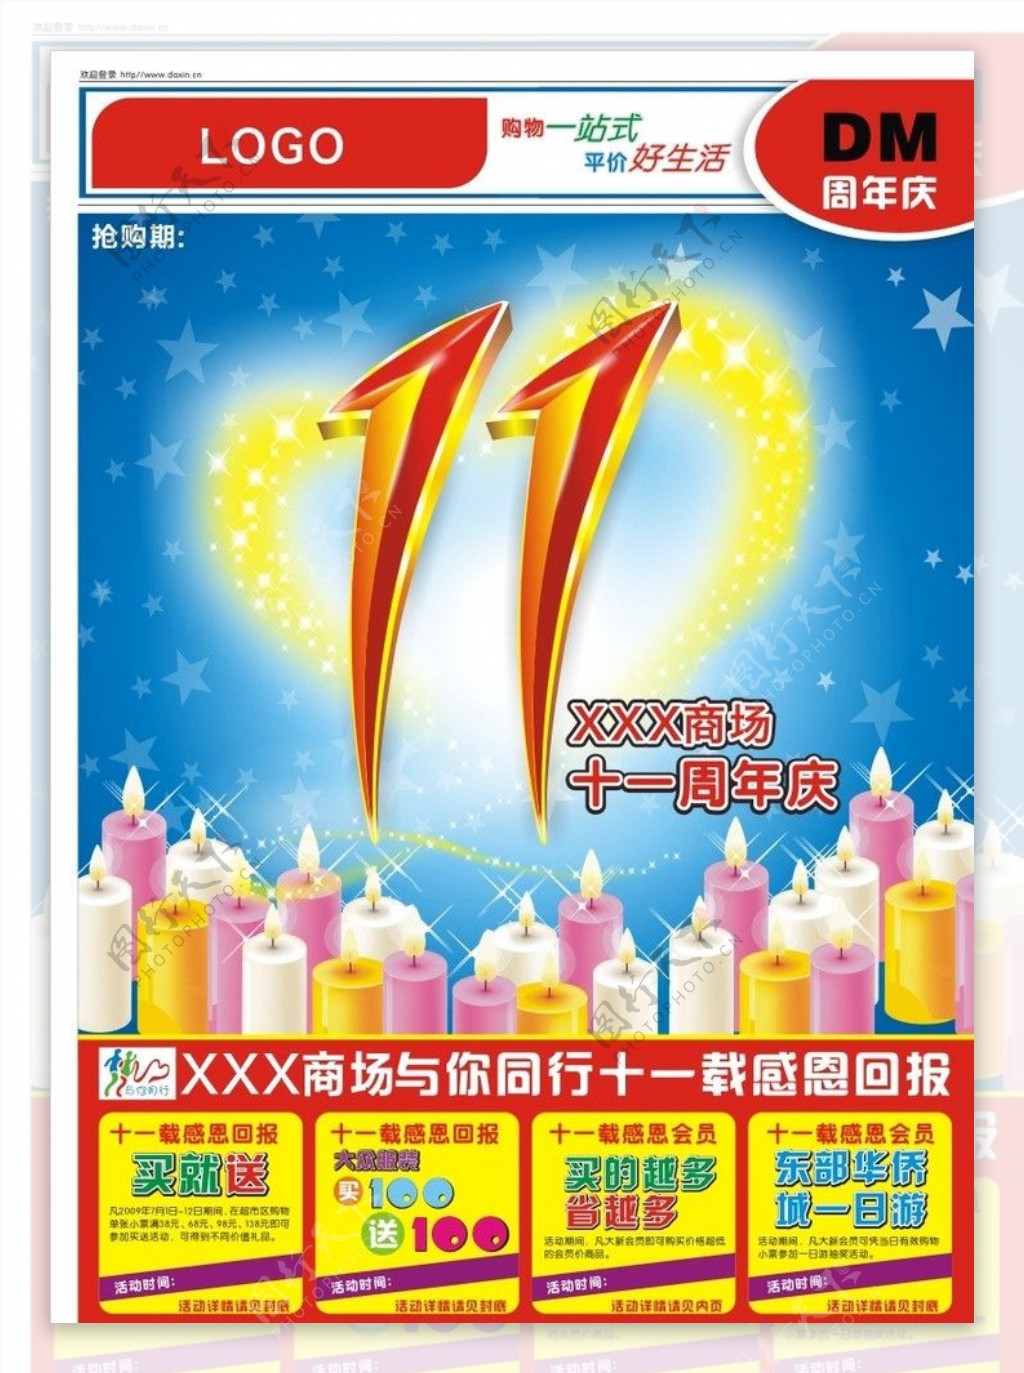 商场11周年庆海报促销封面图片